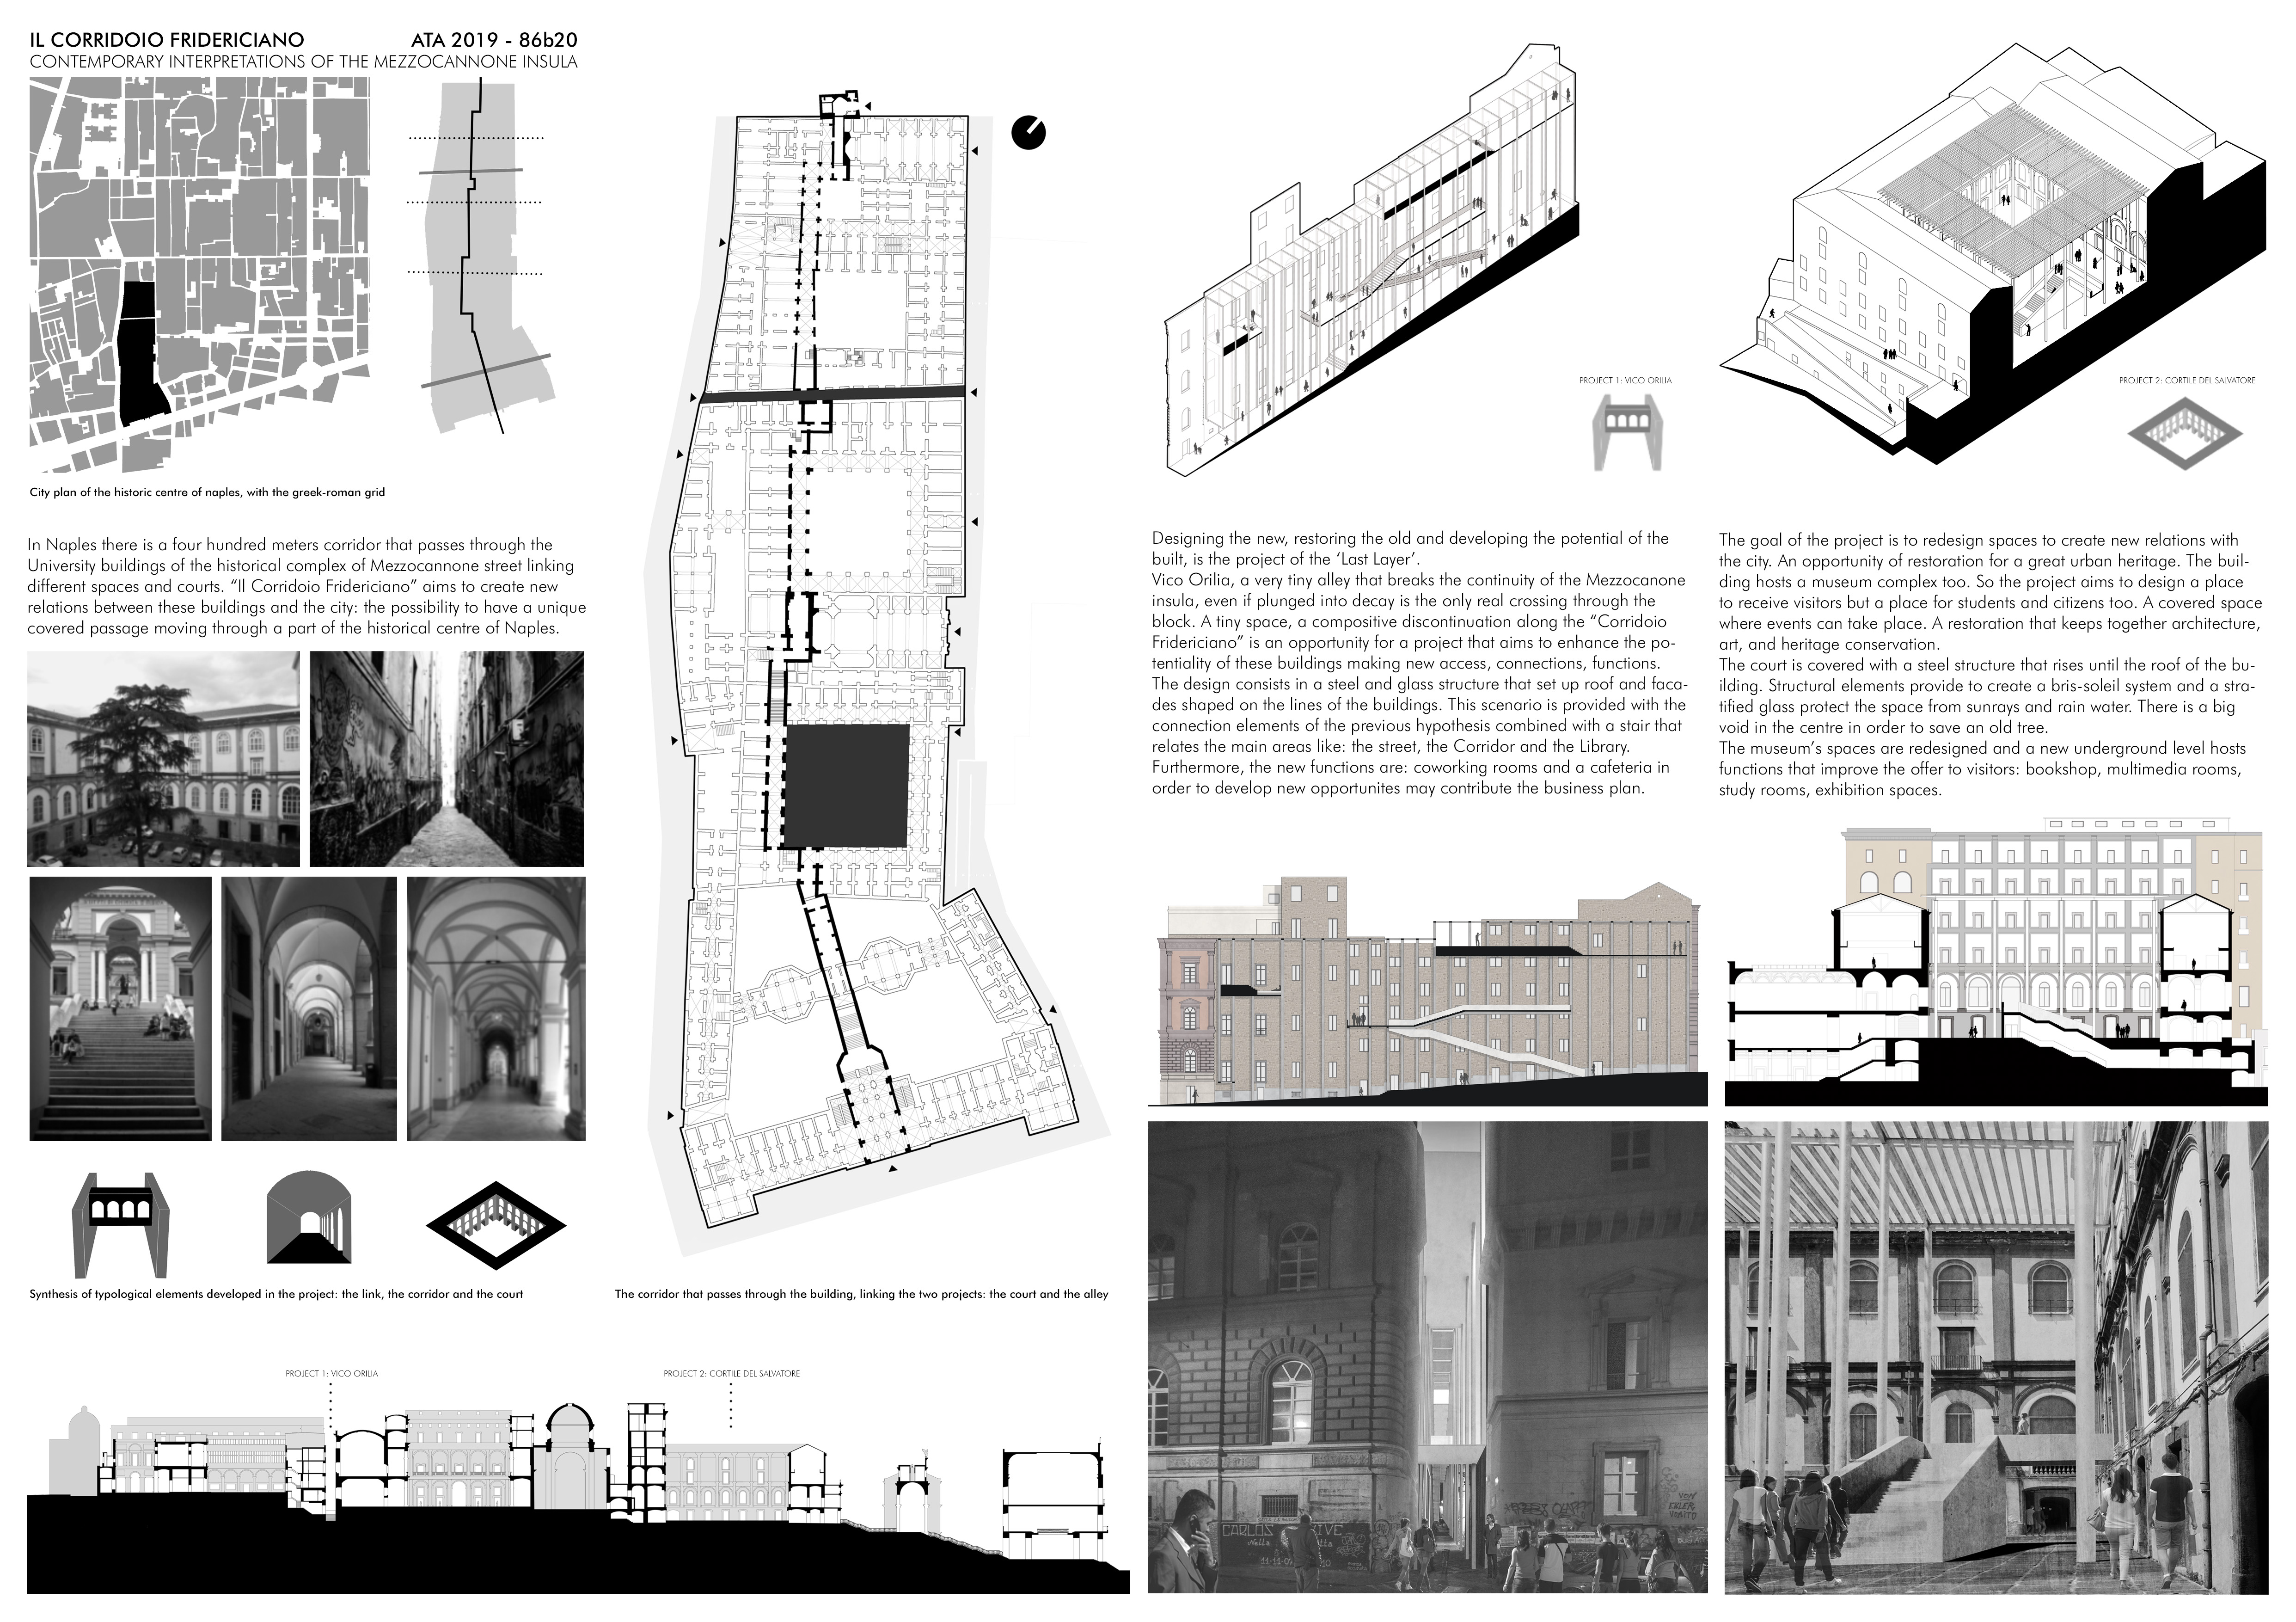 Il Corridoio Fridericiano: Contemporary Interpretations of the Mezzocannone Insula Board